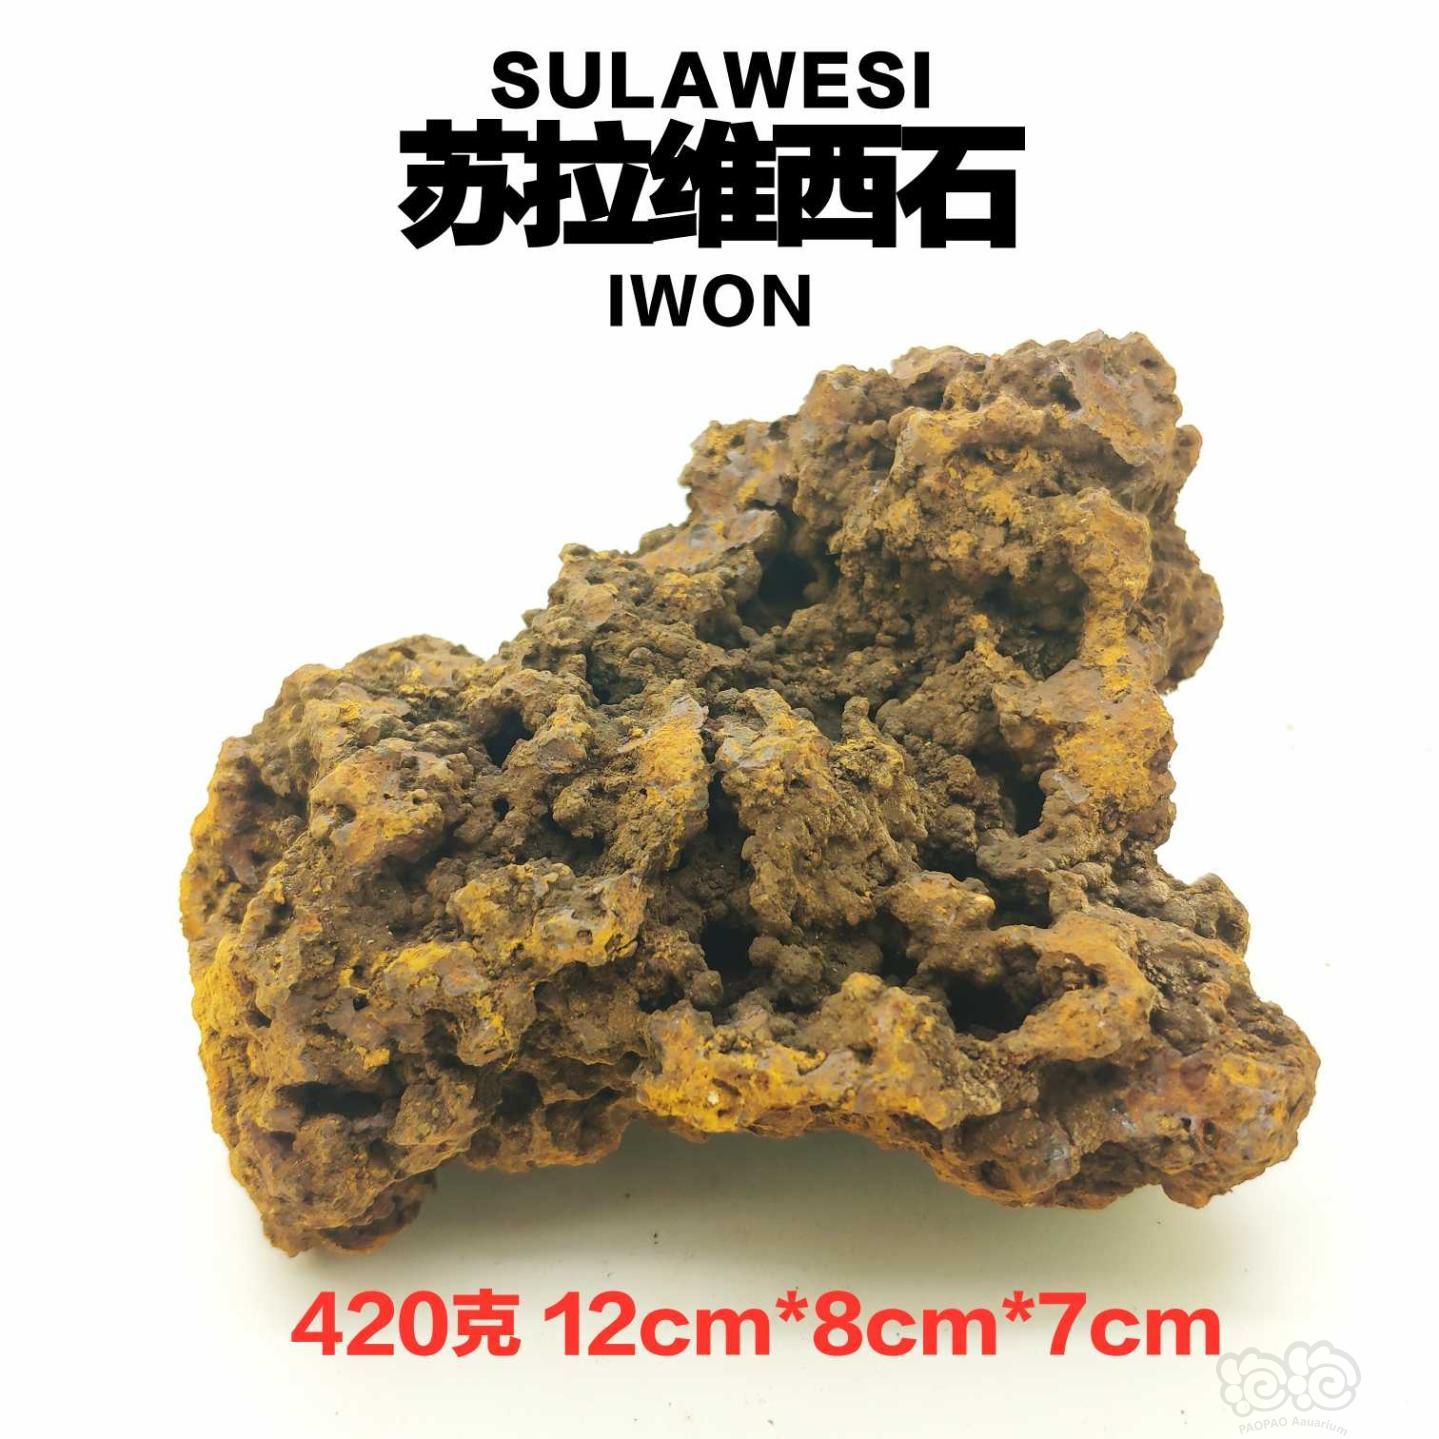 【用品】2019-08-09#RMB拍卖印尼进口天然苏拉维西石一块-图1